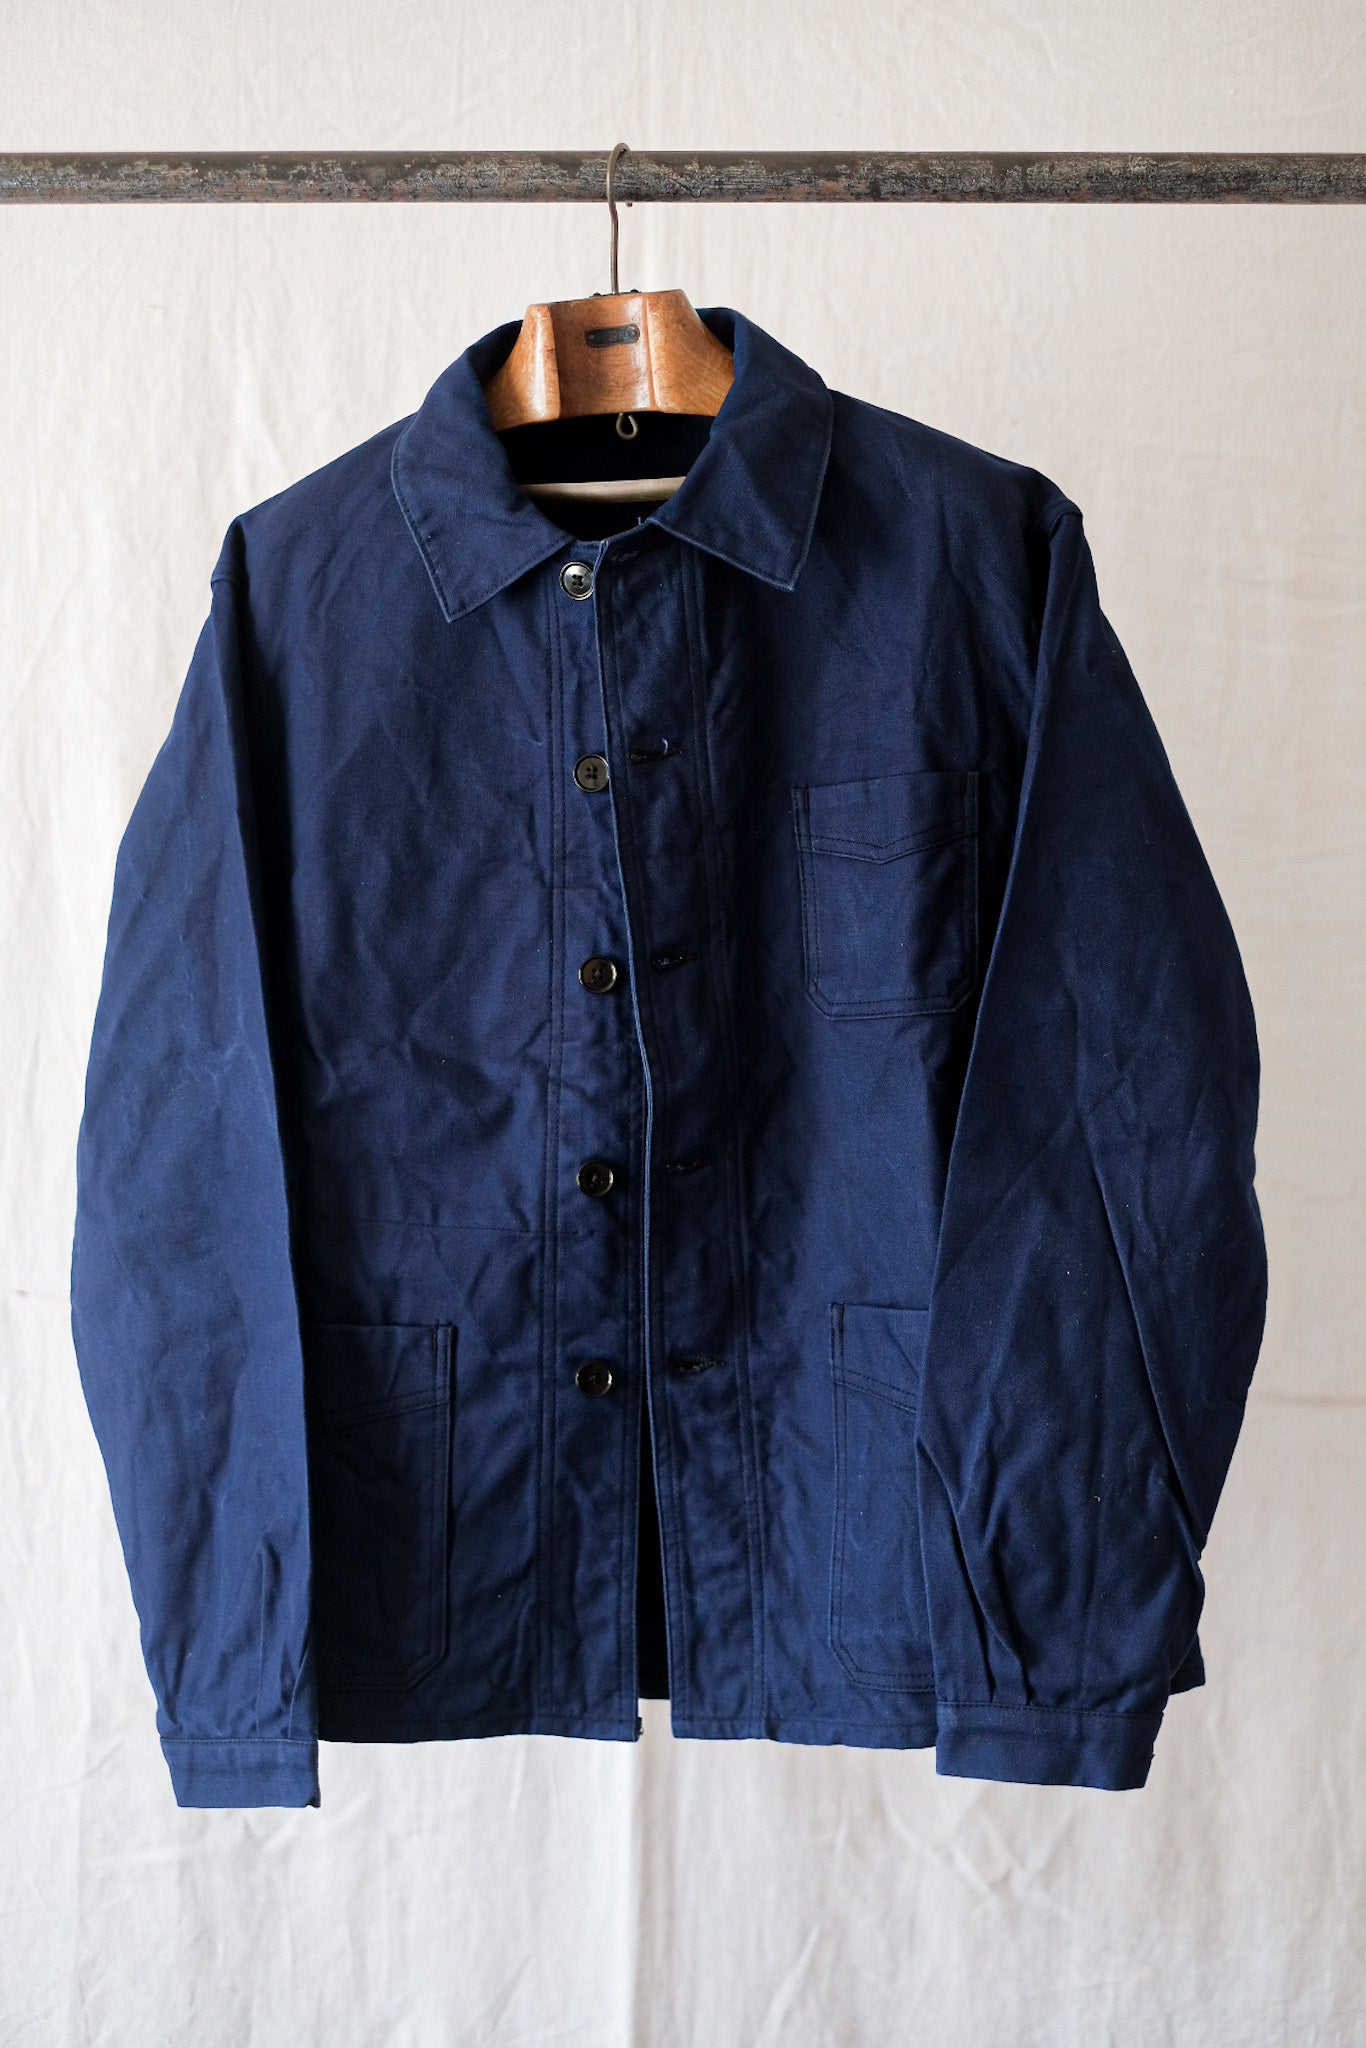 [~ 50's] French Vintage Blue Cotton Twil Work Jacket "Le Mont St. Michel"